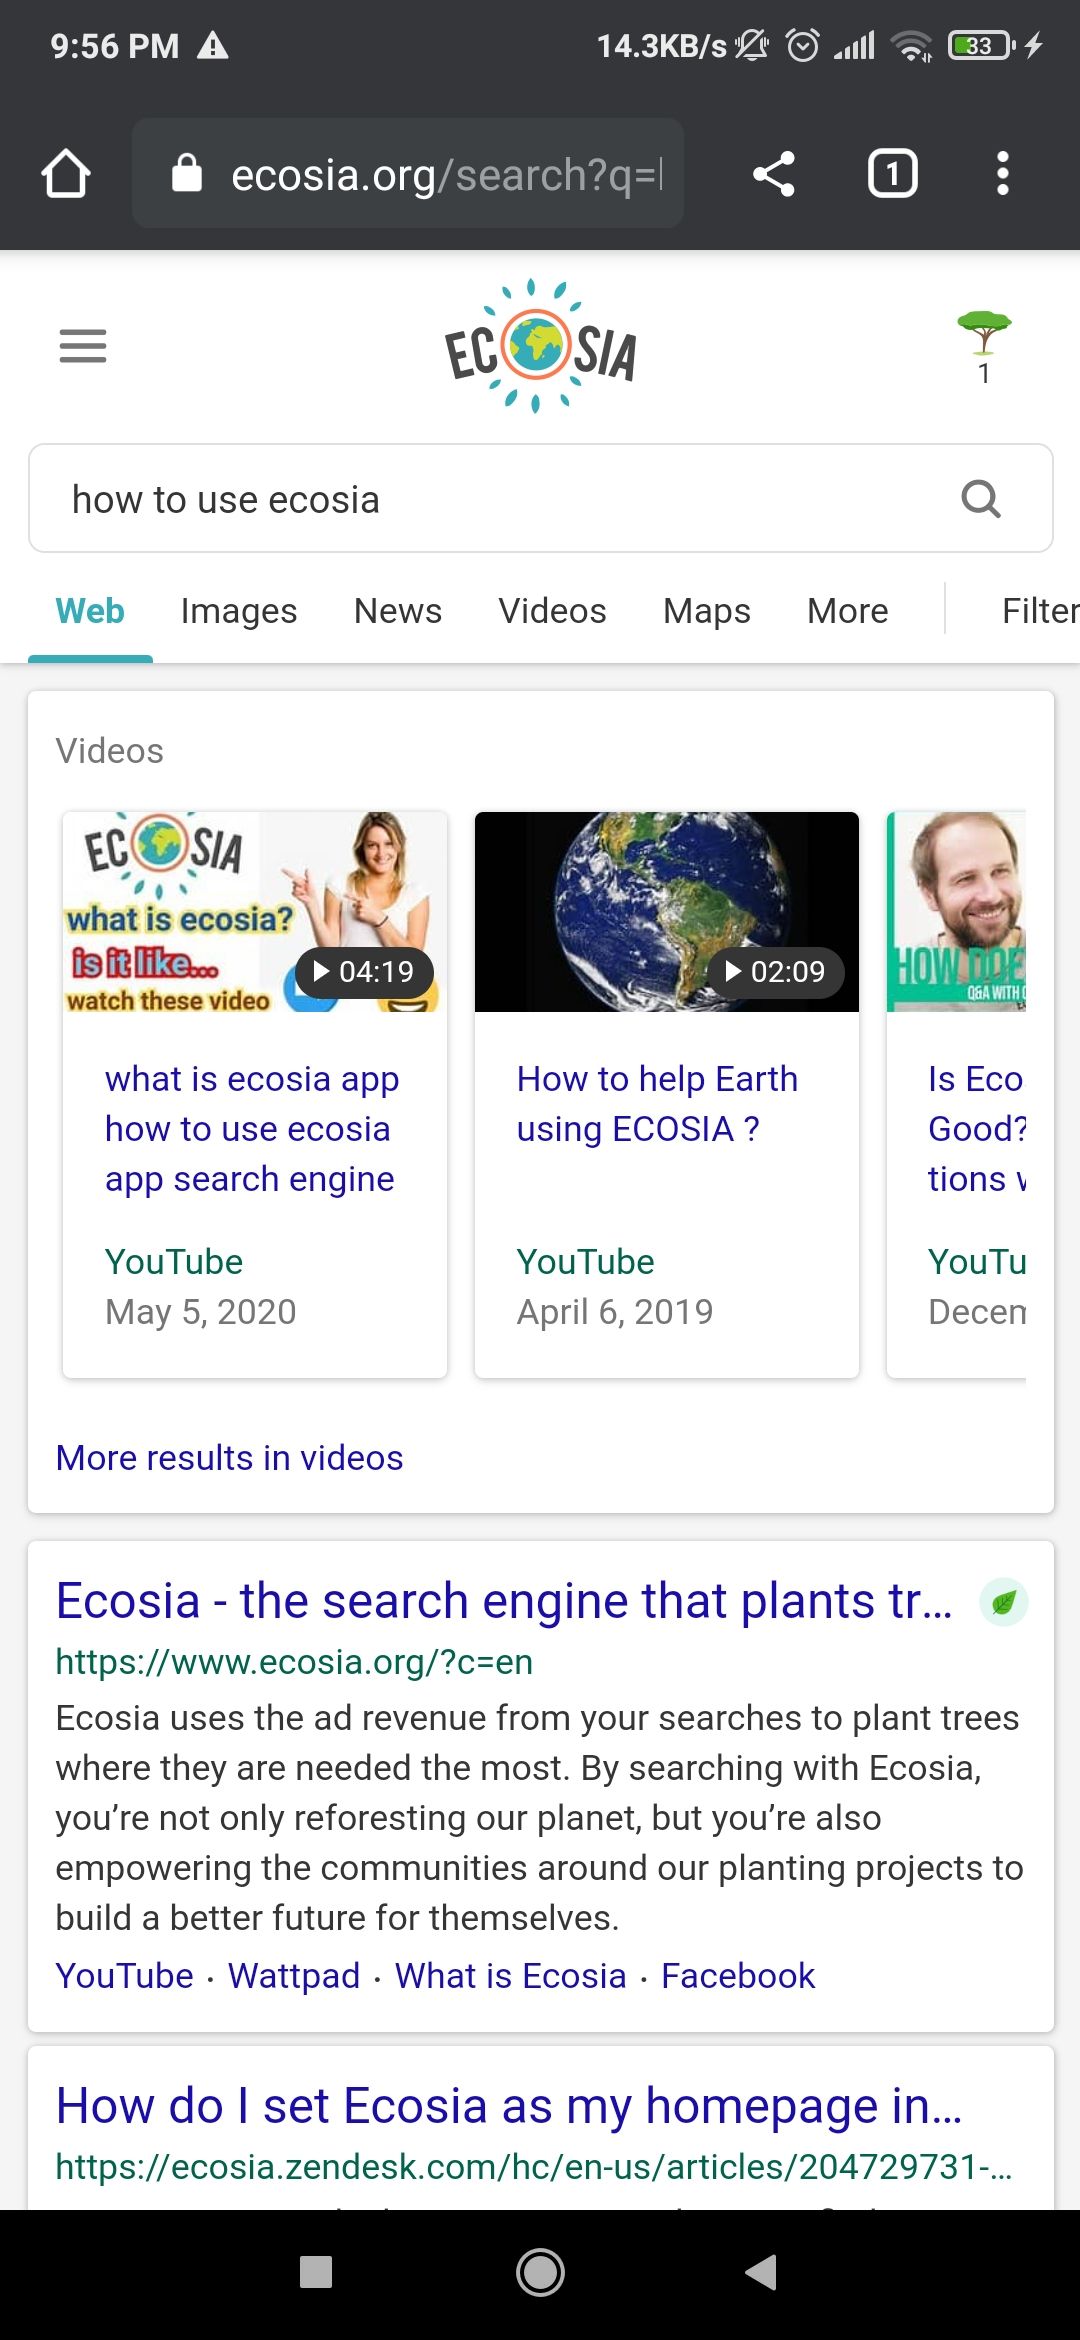 Ecosia mobile app search